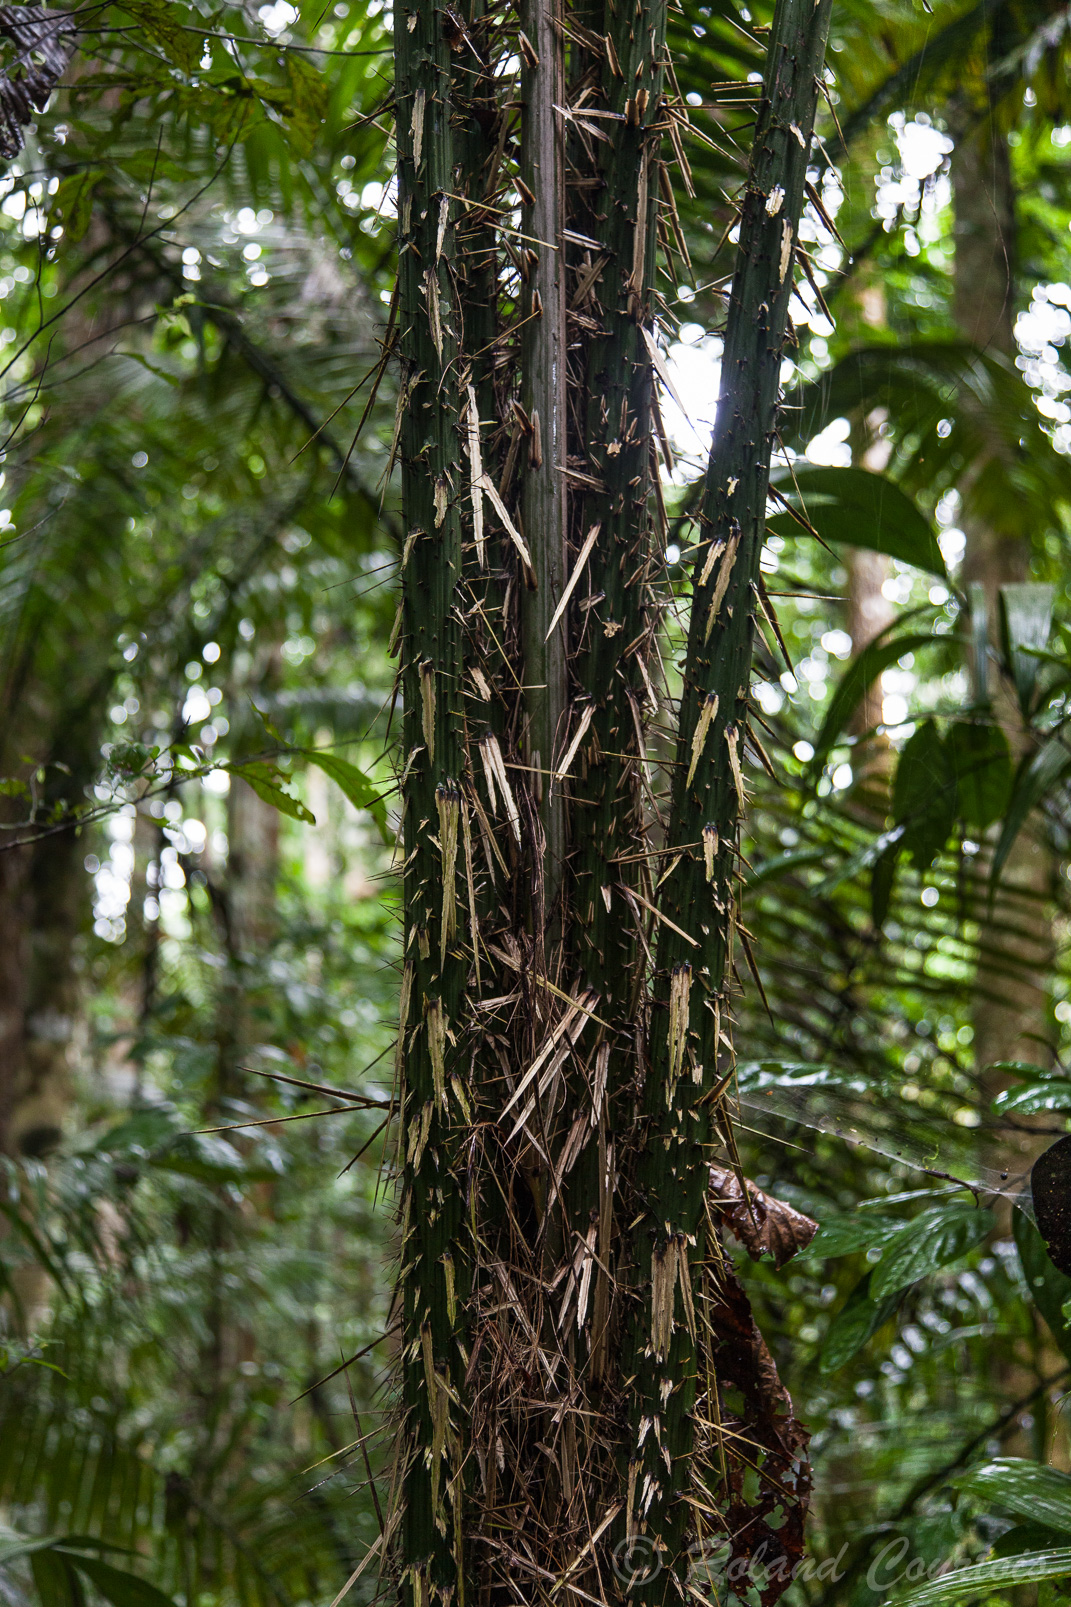 Palmier dont le tronc est recouvert de longues épines ce qui le protège des animaux.